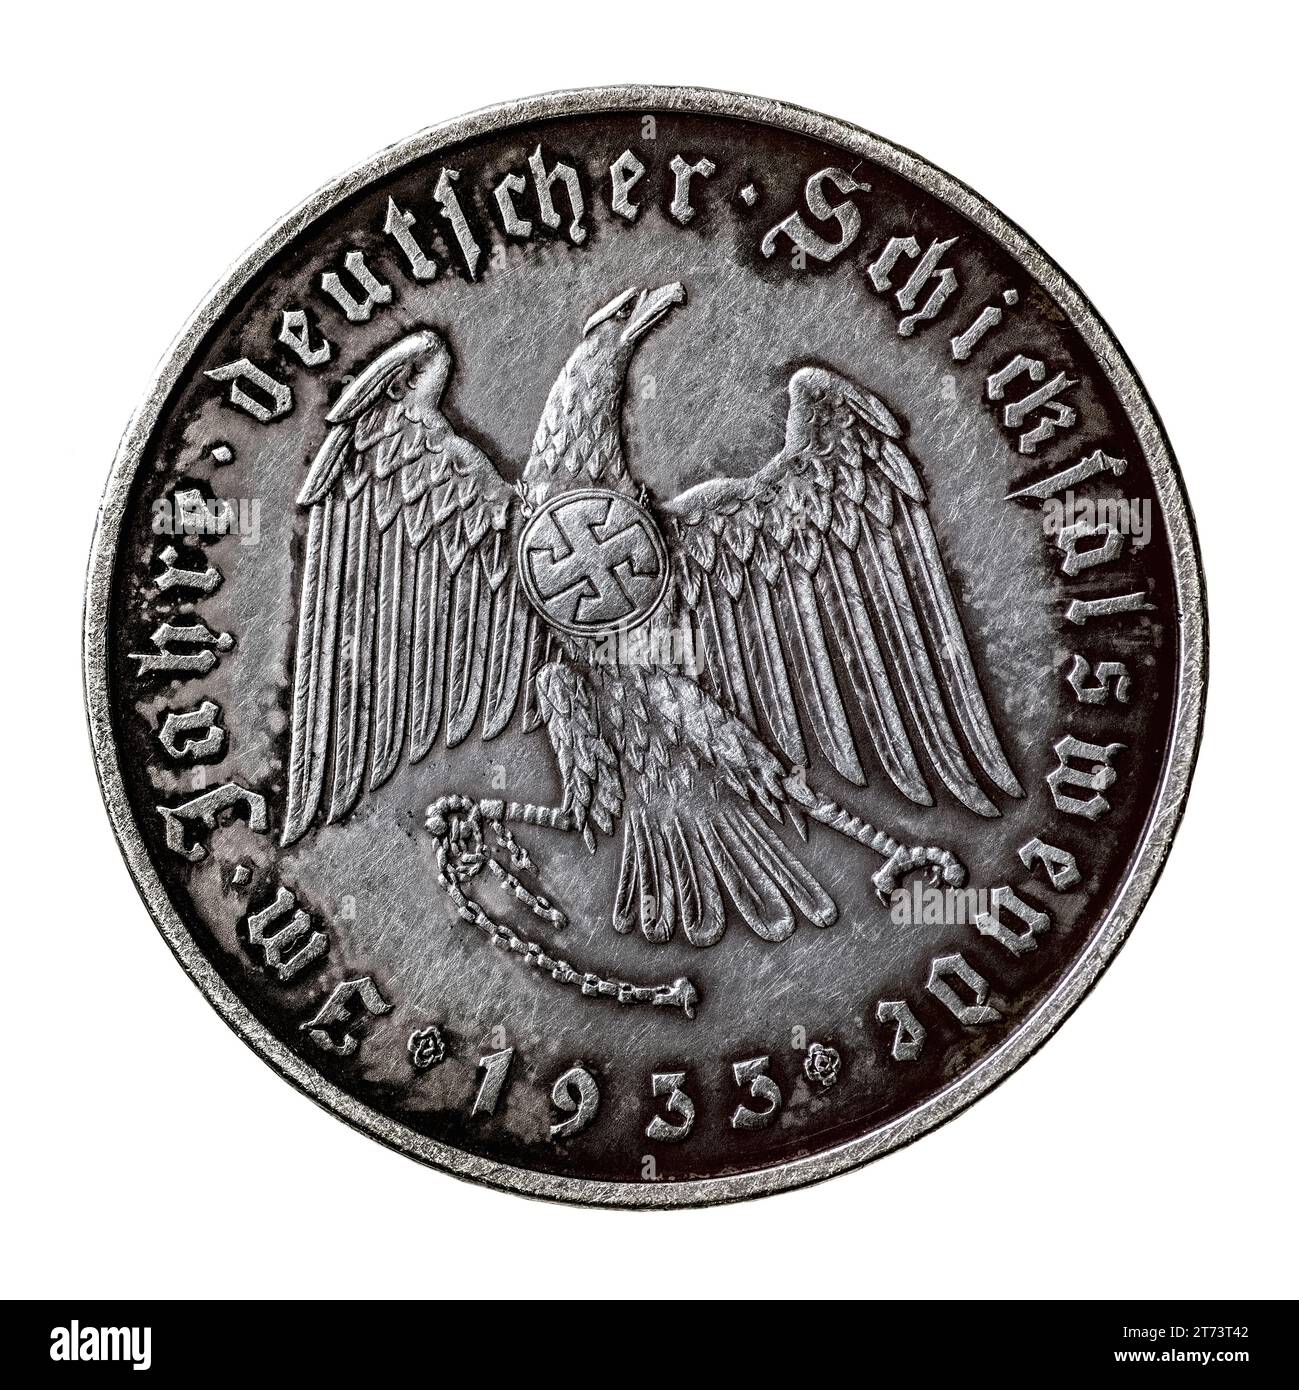 Médaille commémorative allemande de 1933, dédiée à l'arrivée au pouvoir d'Adolf Hitler. Marche arrière. Inscriptions : 'dans les années du destin allemand change en 19 Banque D'Images